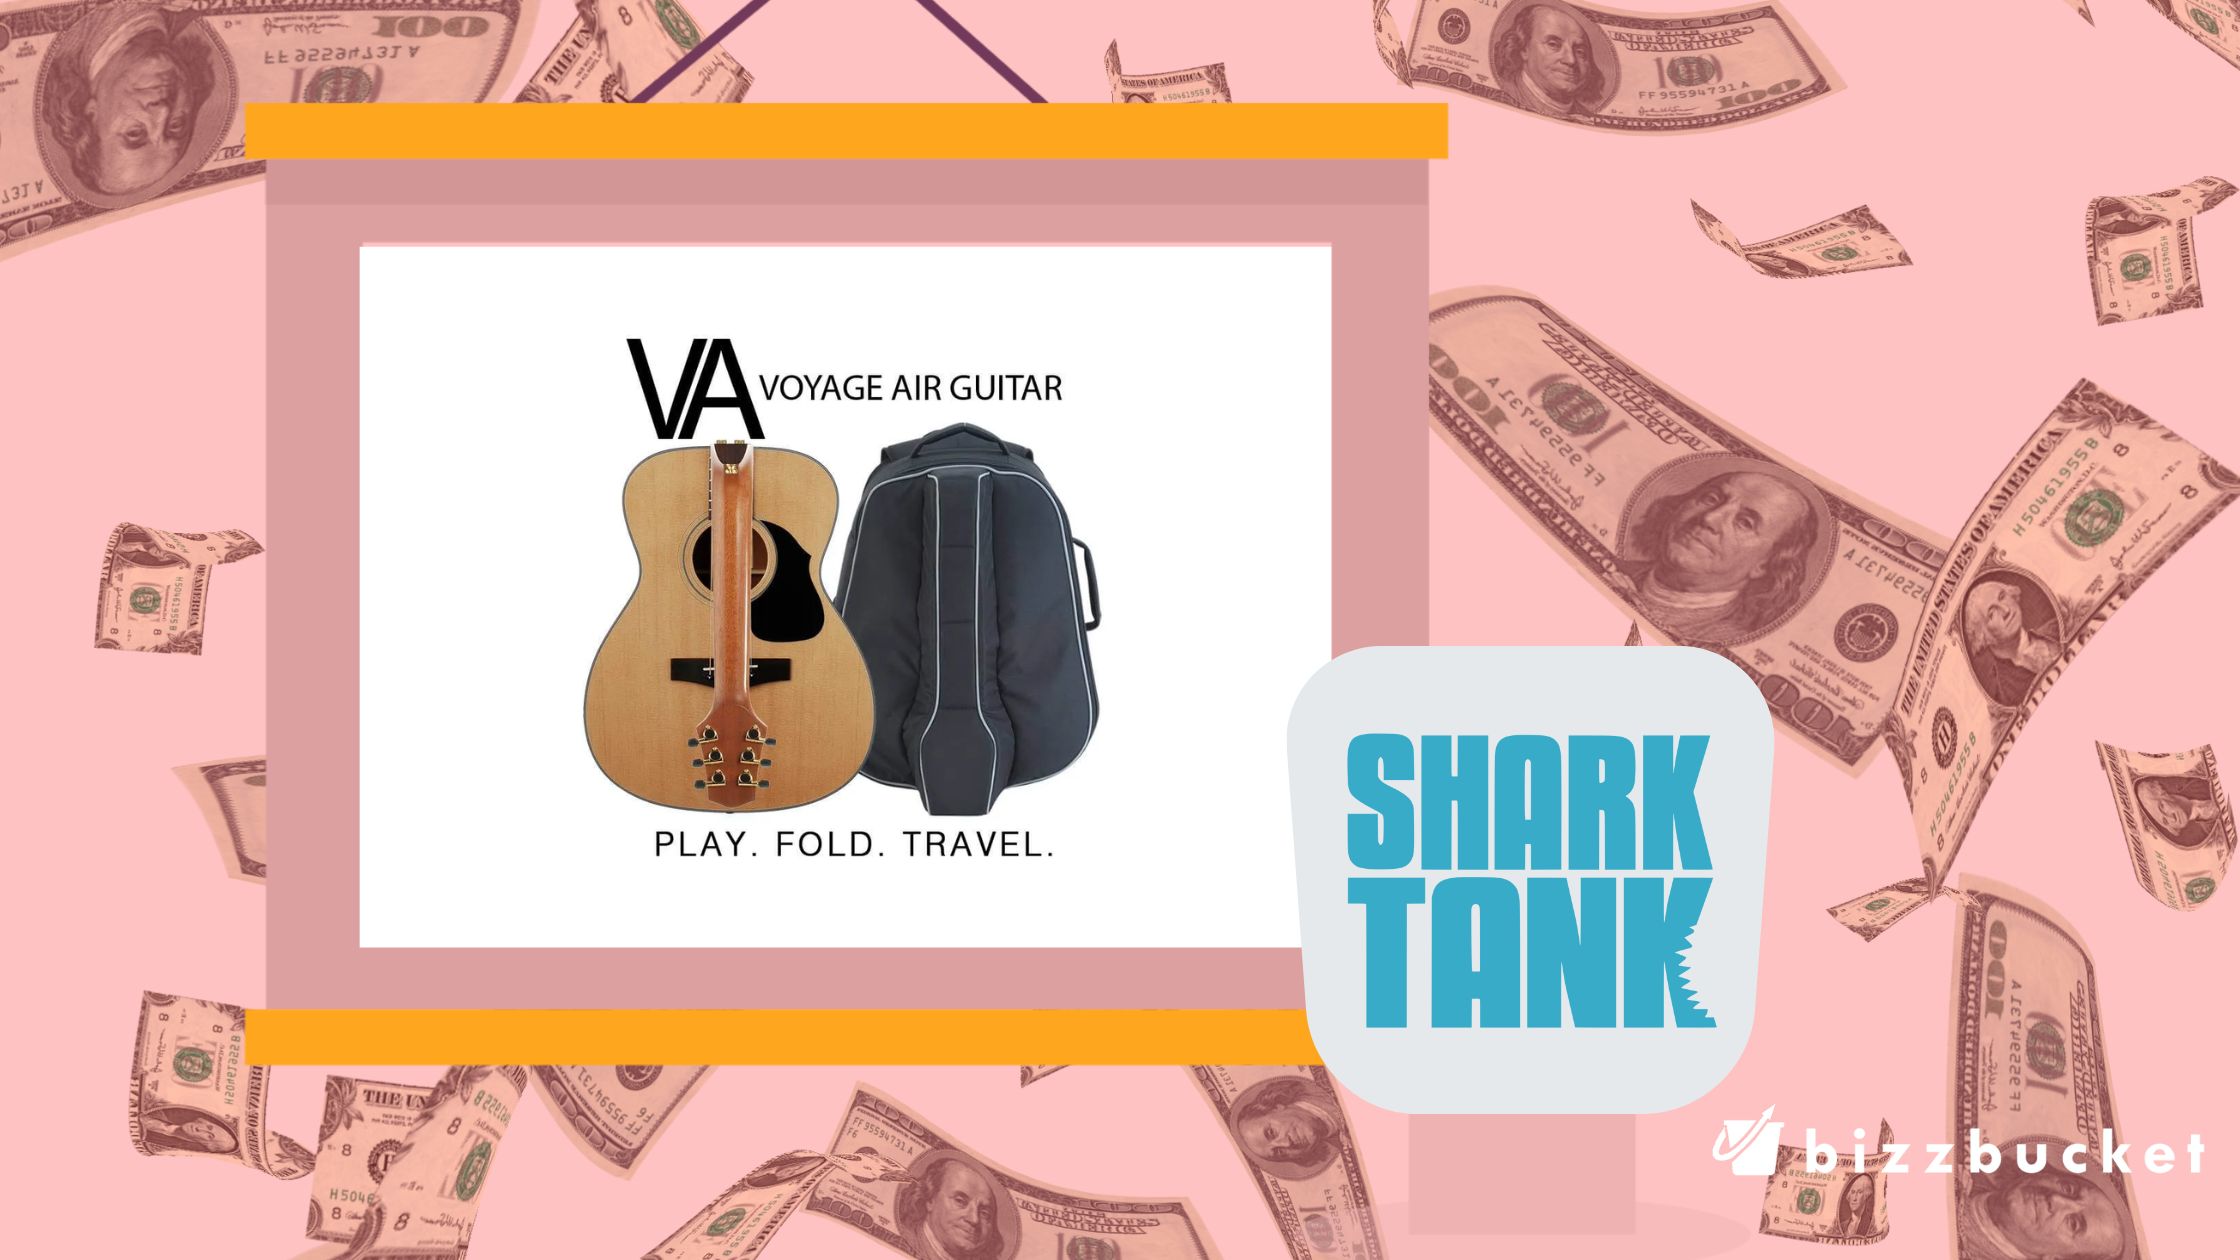 Folding guitar shark tank update